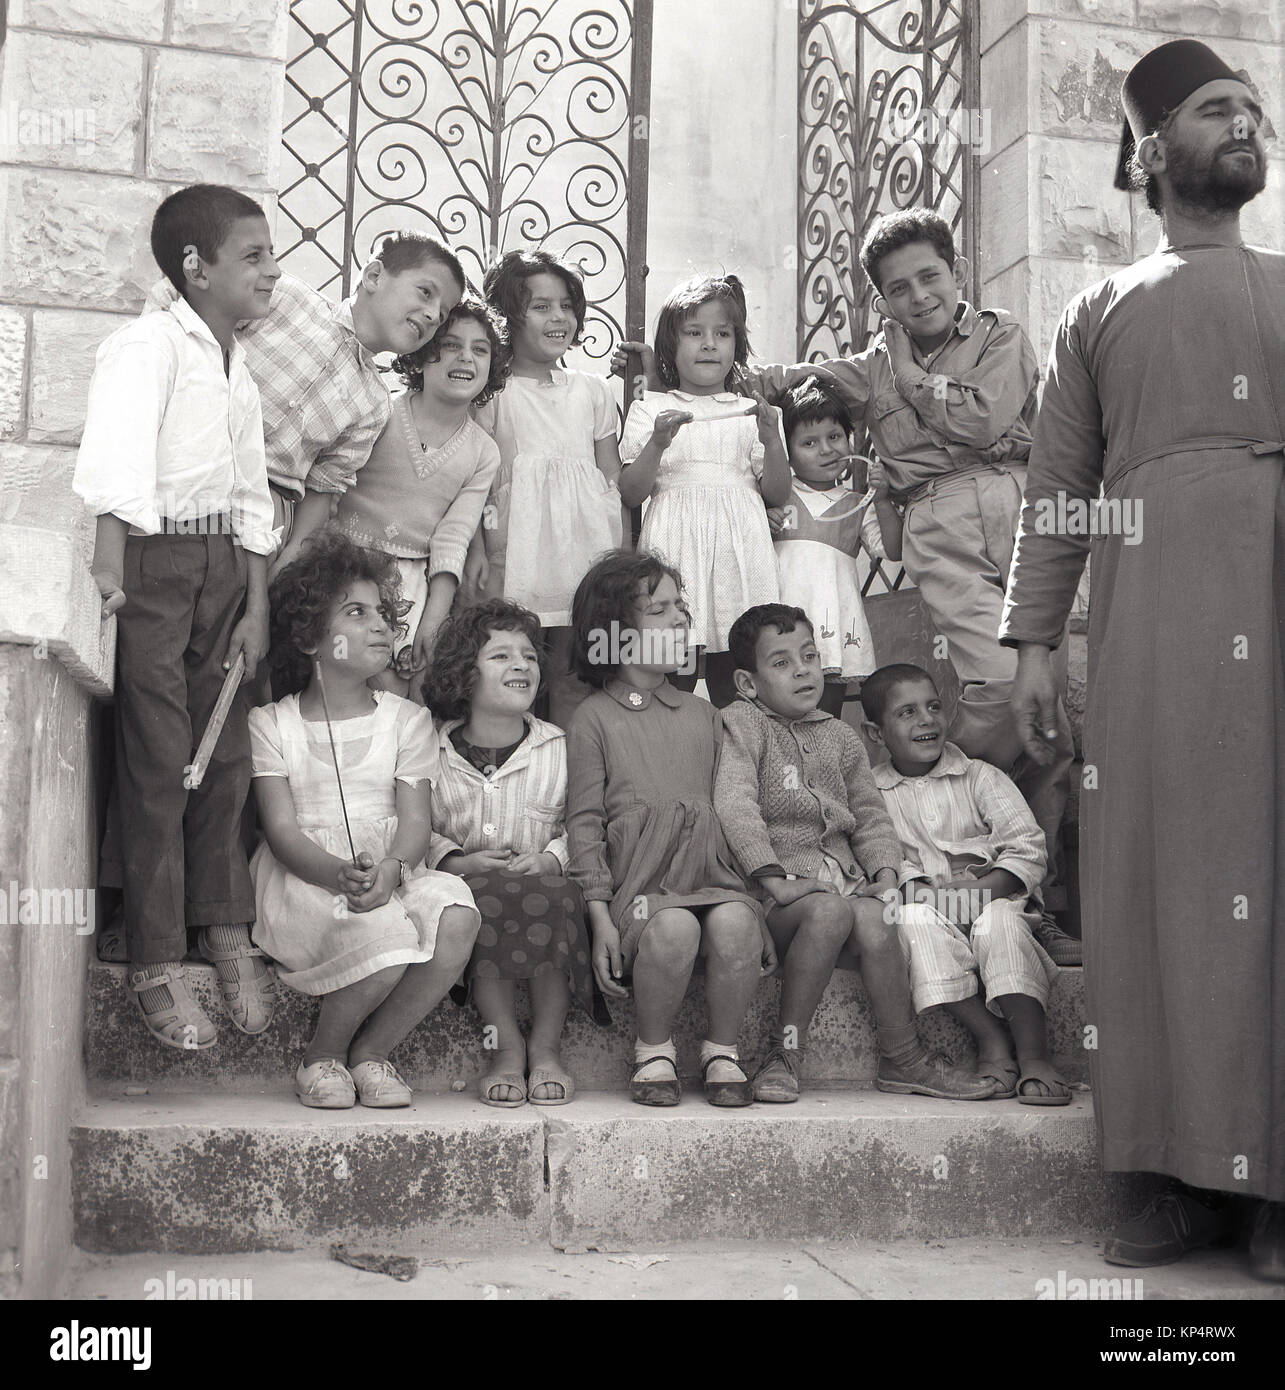 Années 1950, tableau historique, un homme barbu prêtre avec chapeau et la robe a un peu de plaisir avec un groupe d'enfants assis et debout sur les marches à l'extérieur d'une entrée fermée, la Jordanie. Banque D'Images